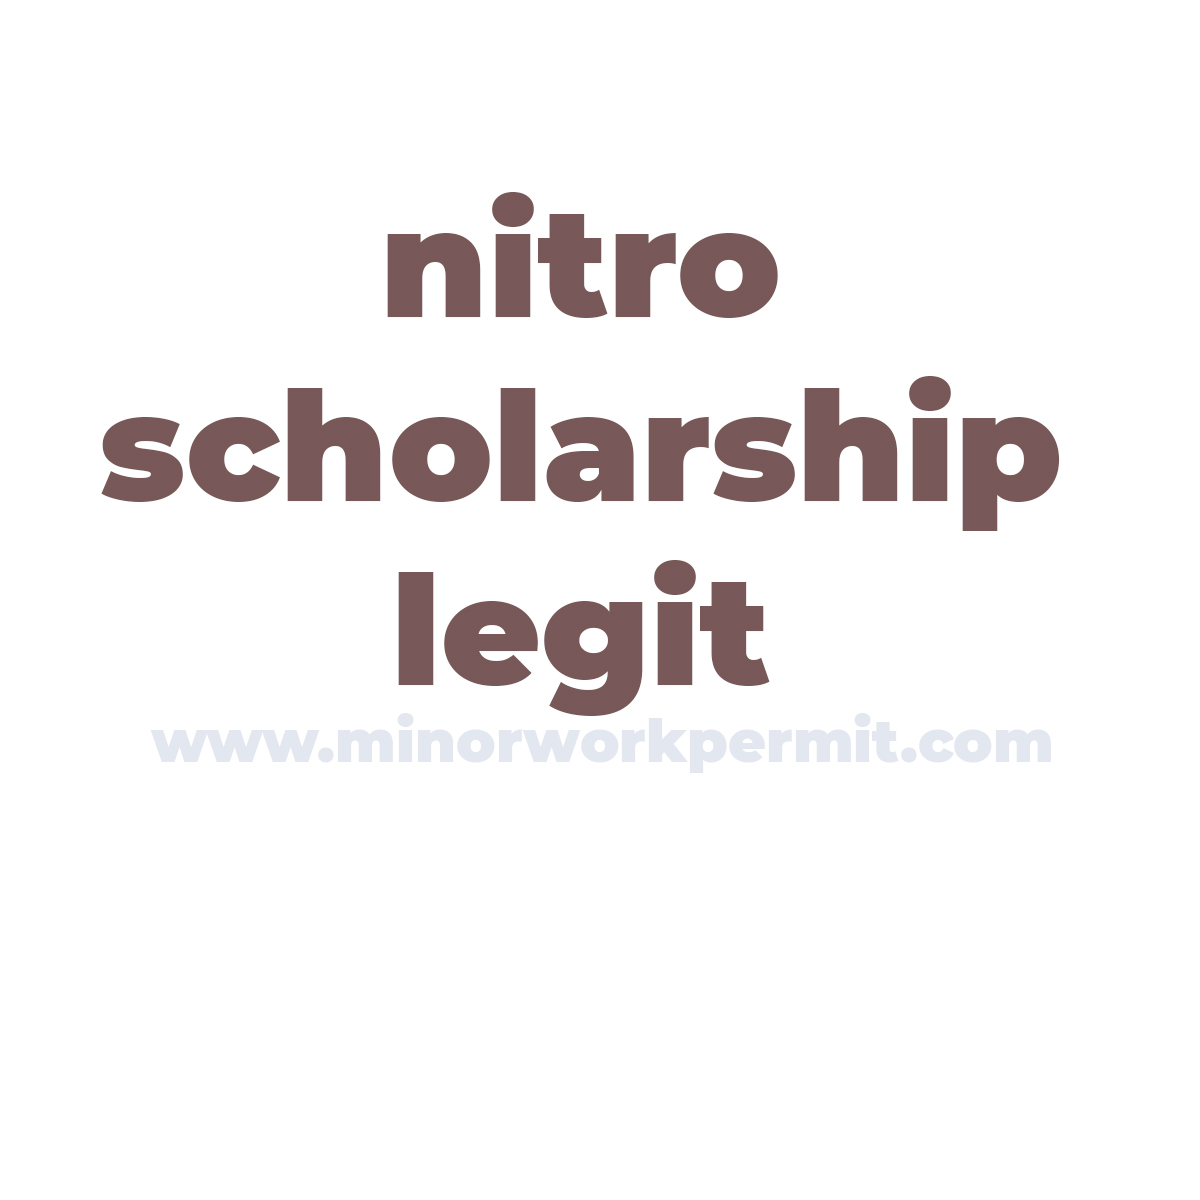 nitro scholarship legit